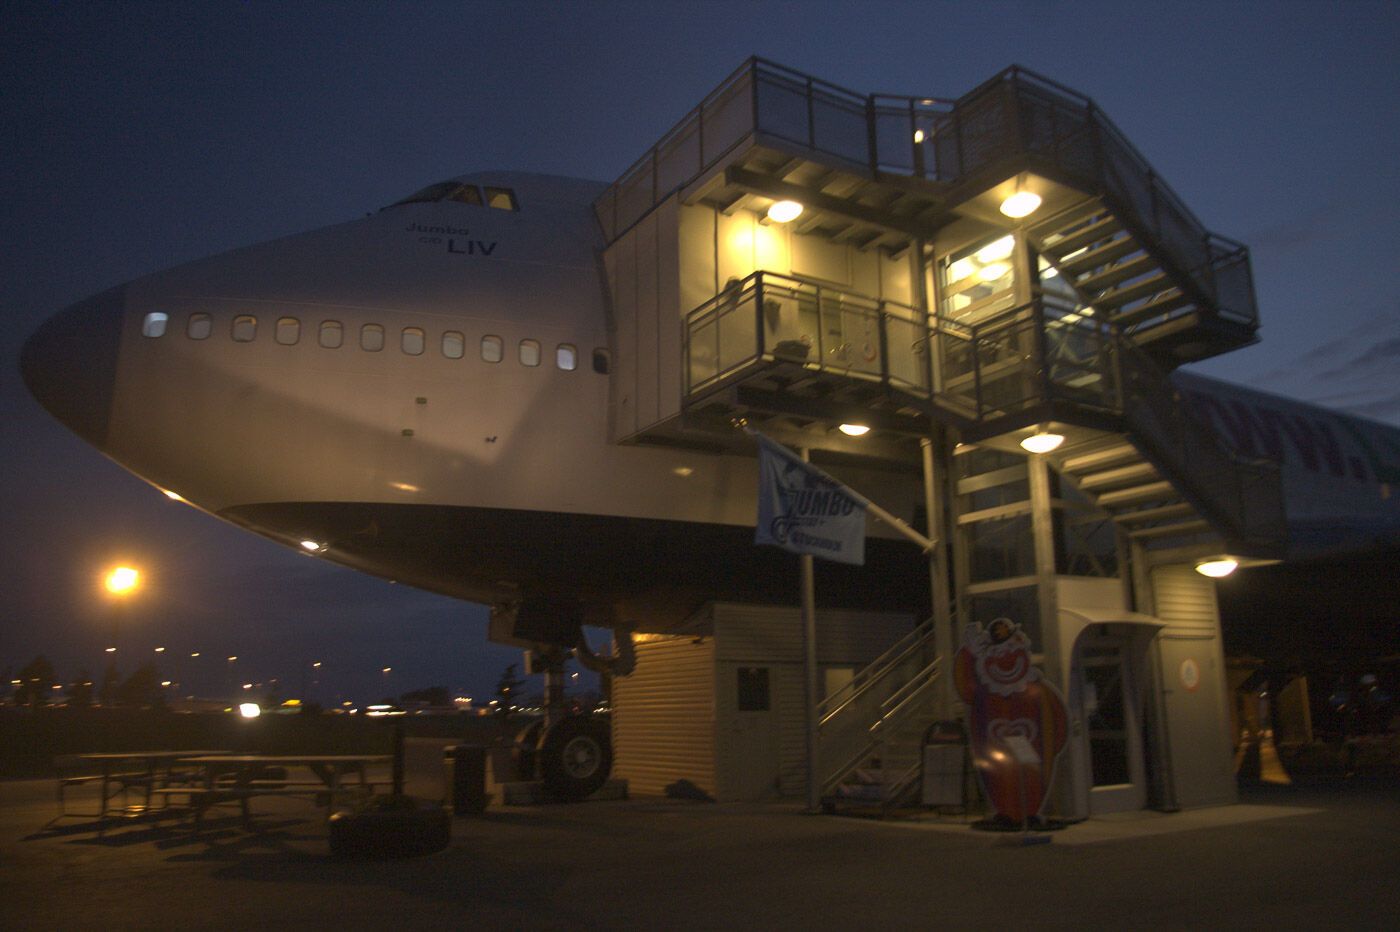 Ночь на борту отеля Boeing-747